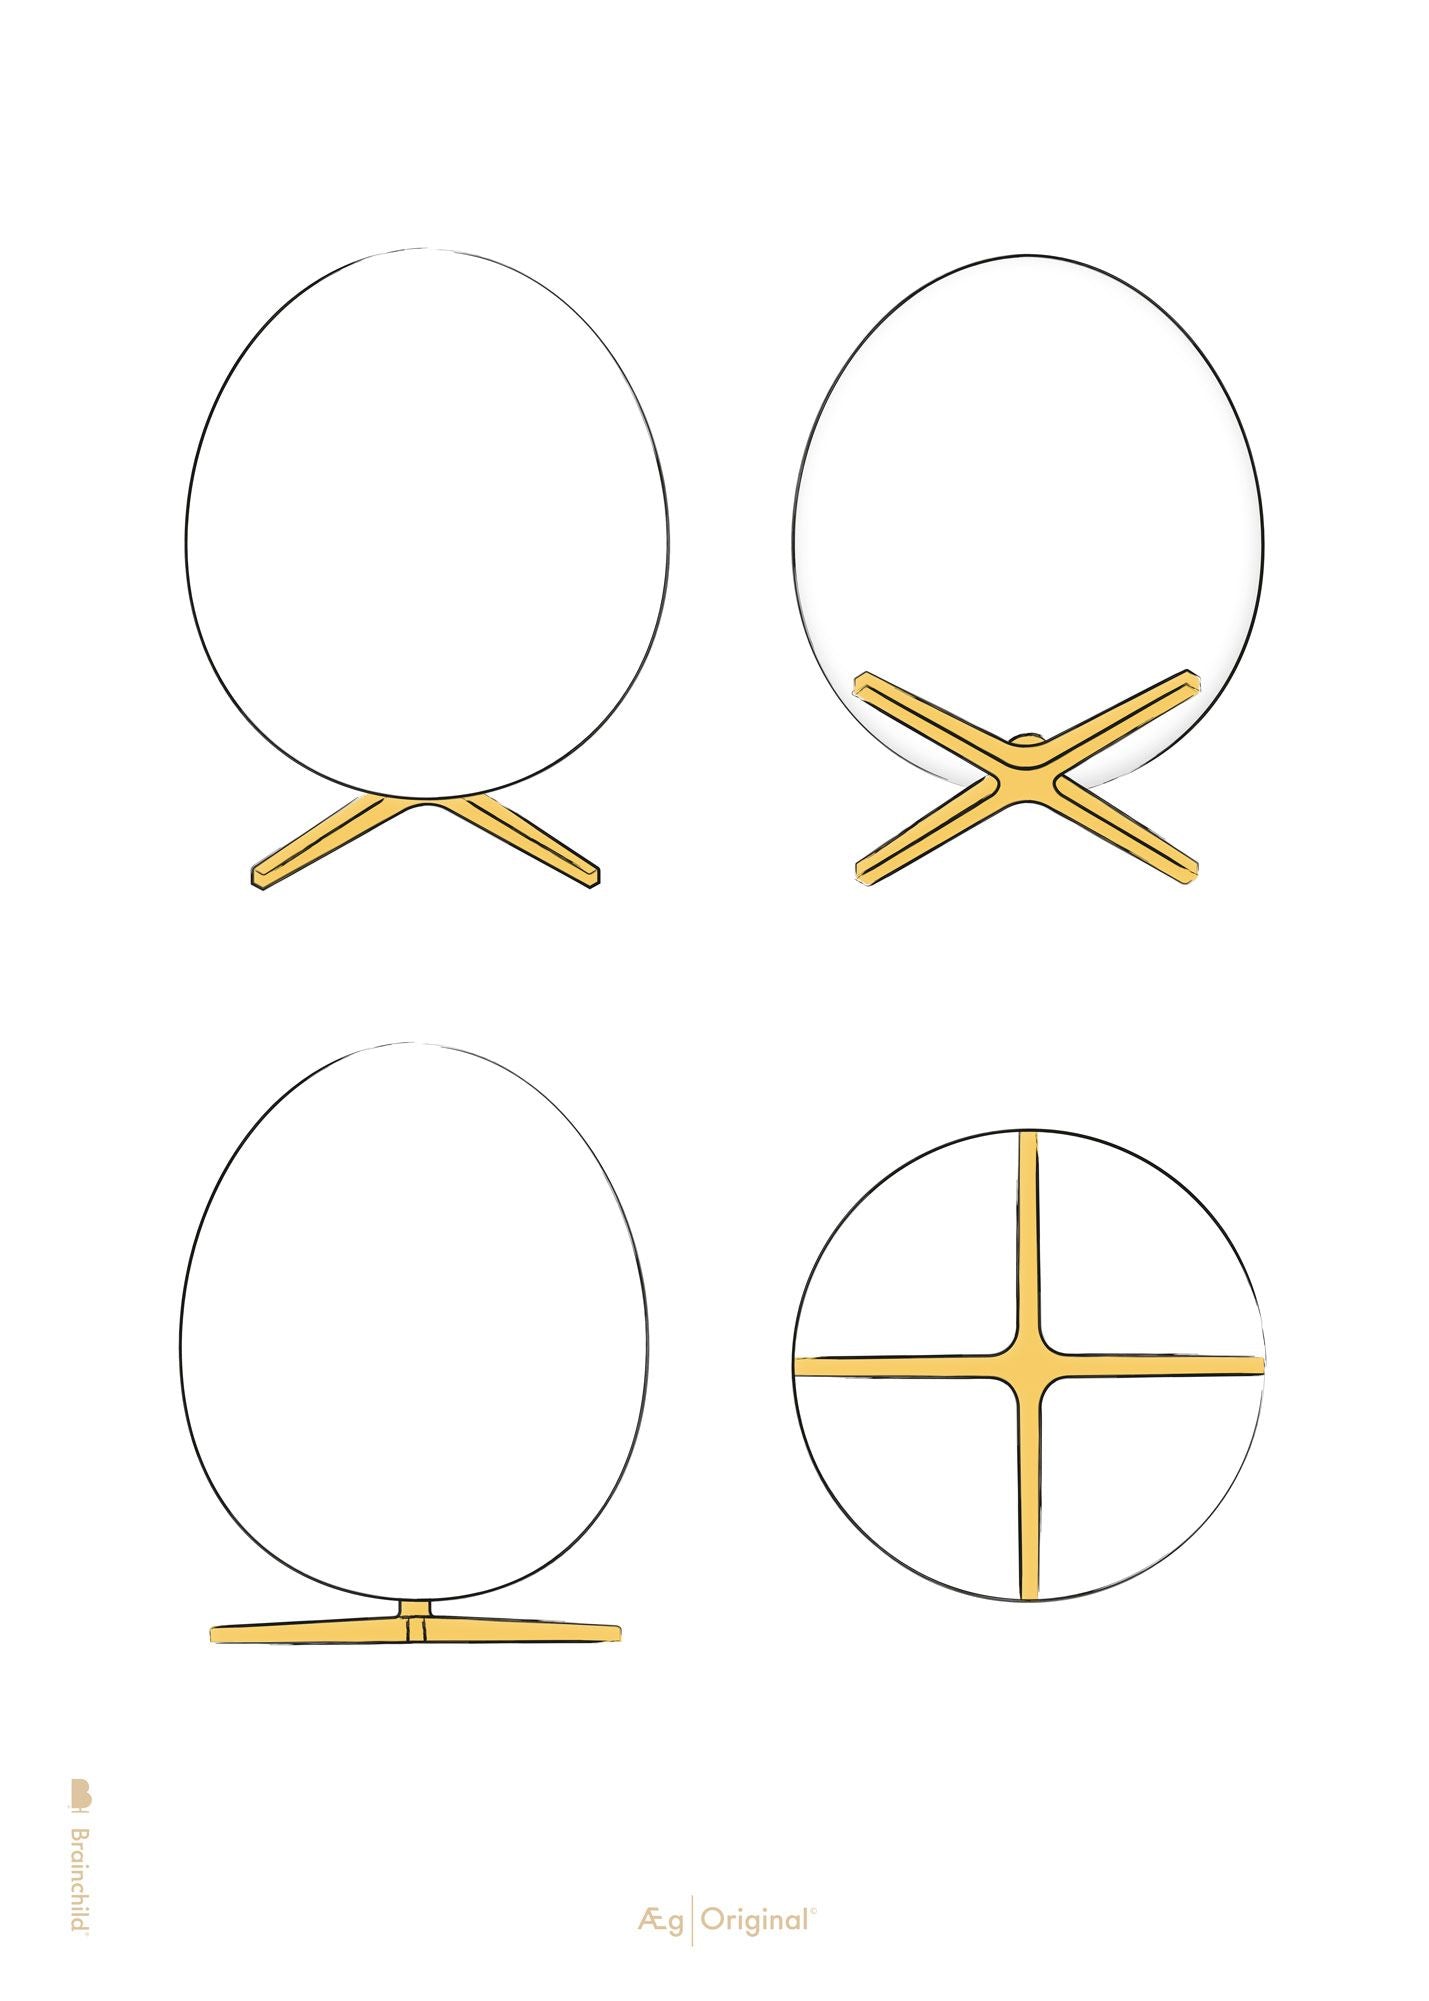 Affiche de l'œuf de conception d'oeufs sans cadre A5, fond blanc